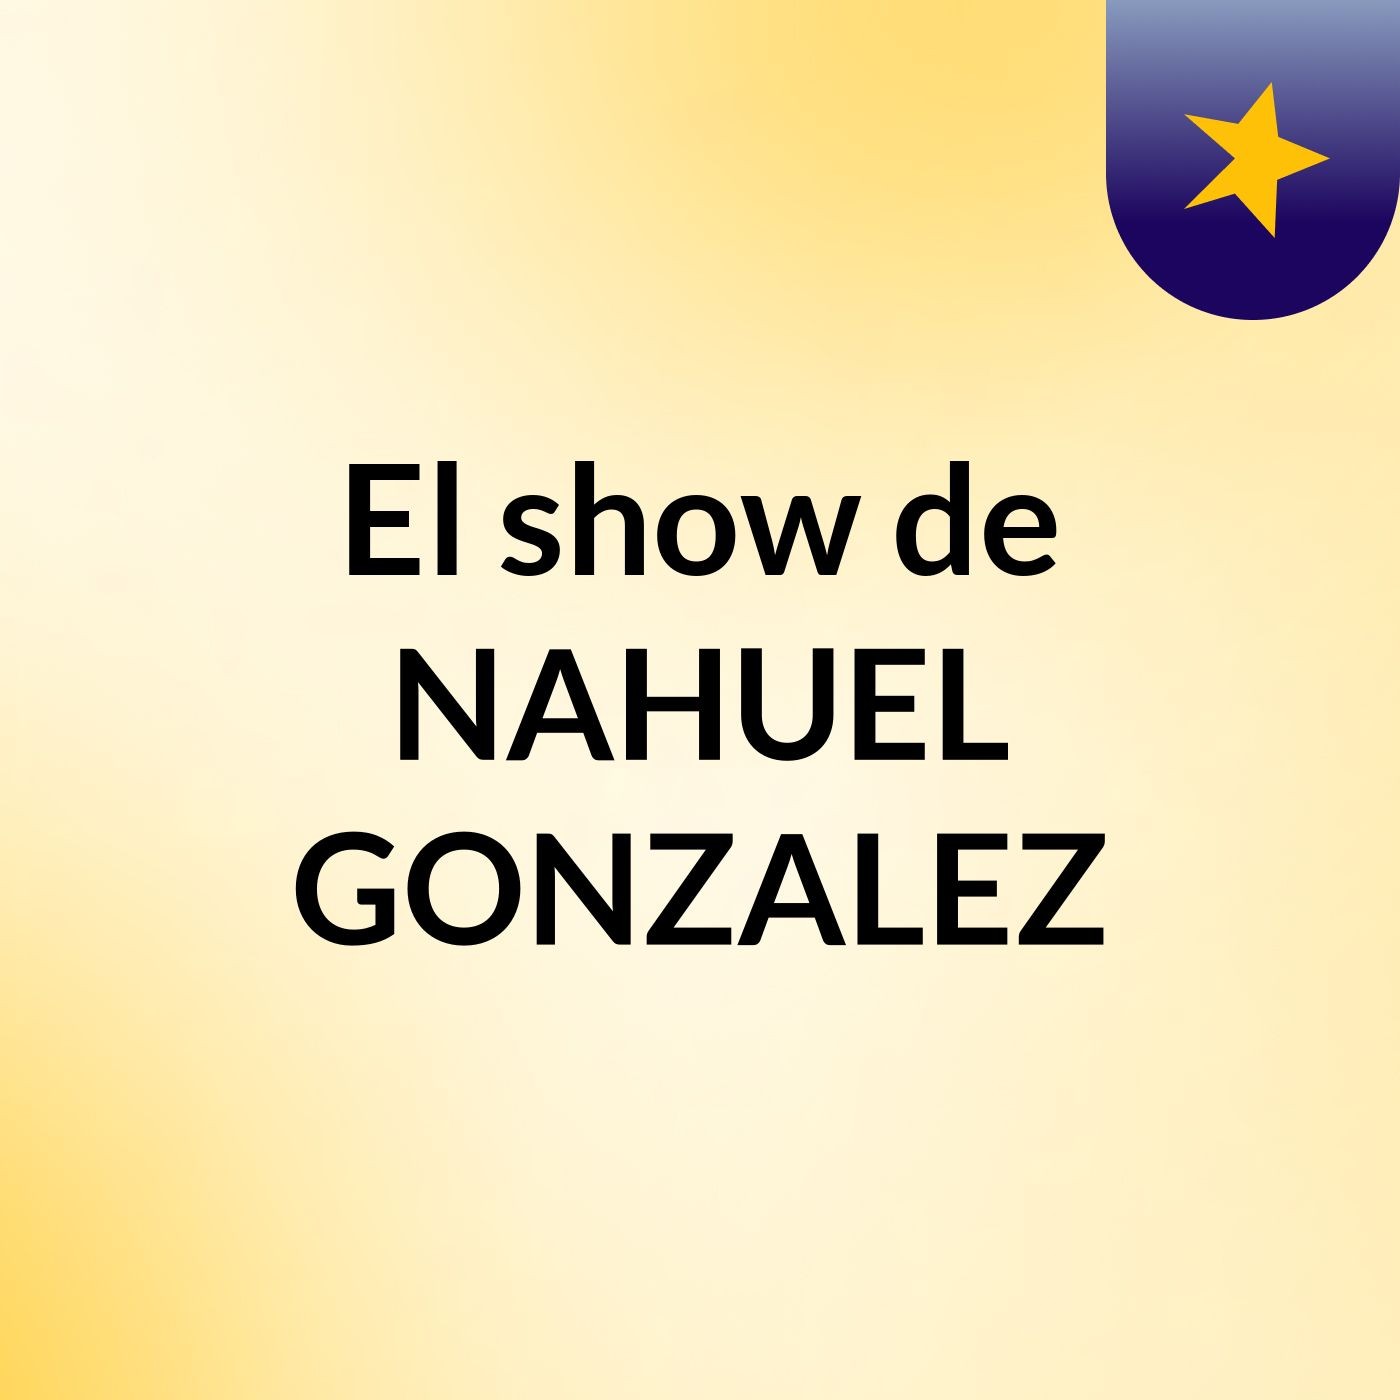 El show de NAHUEL GONZALEZ